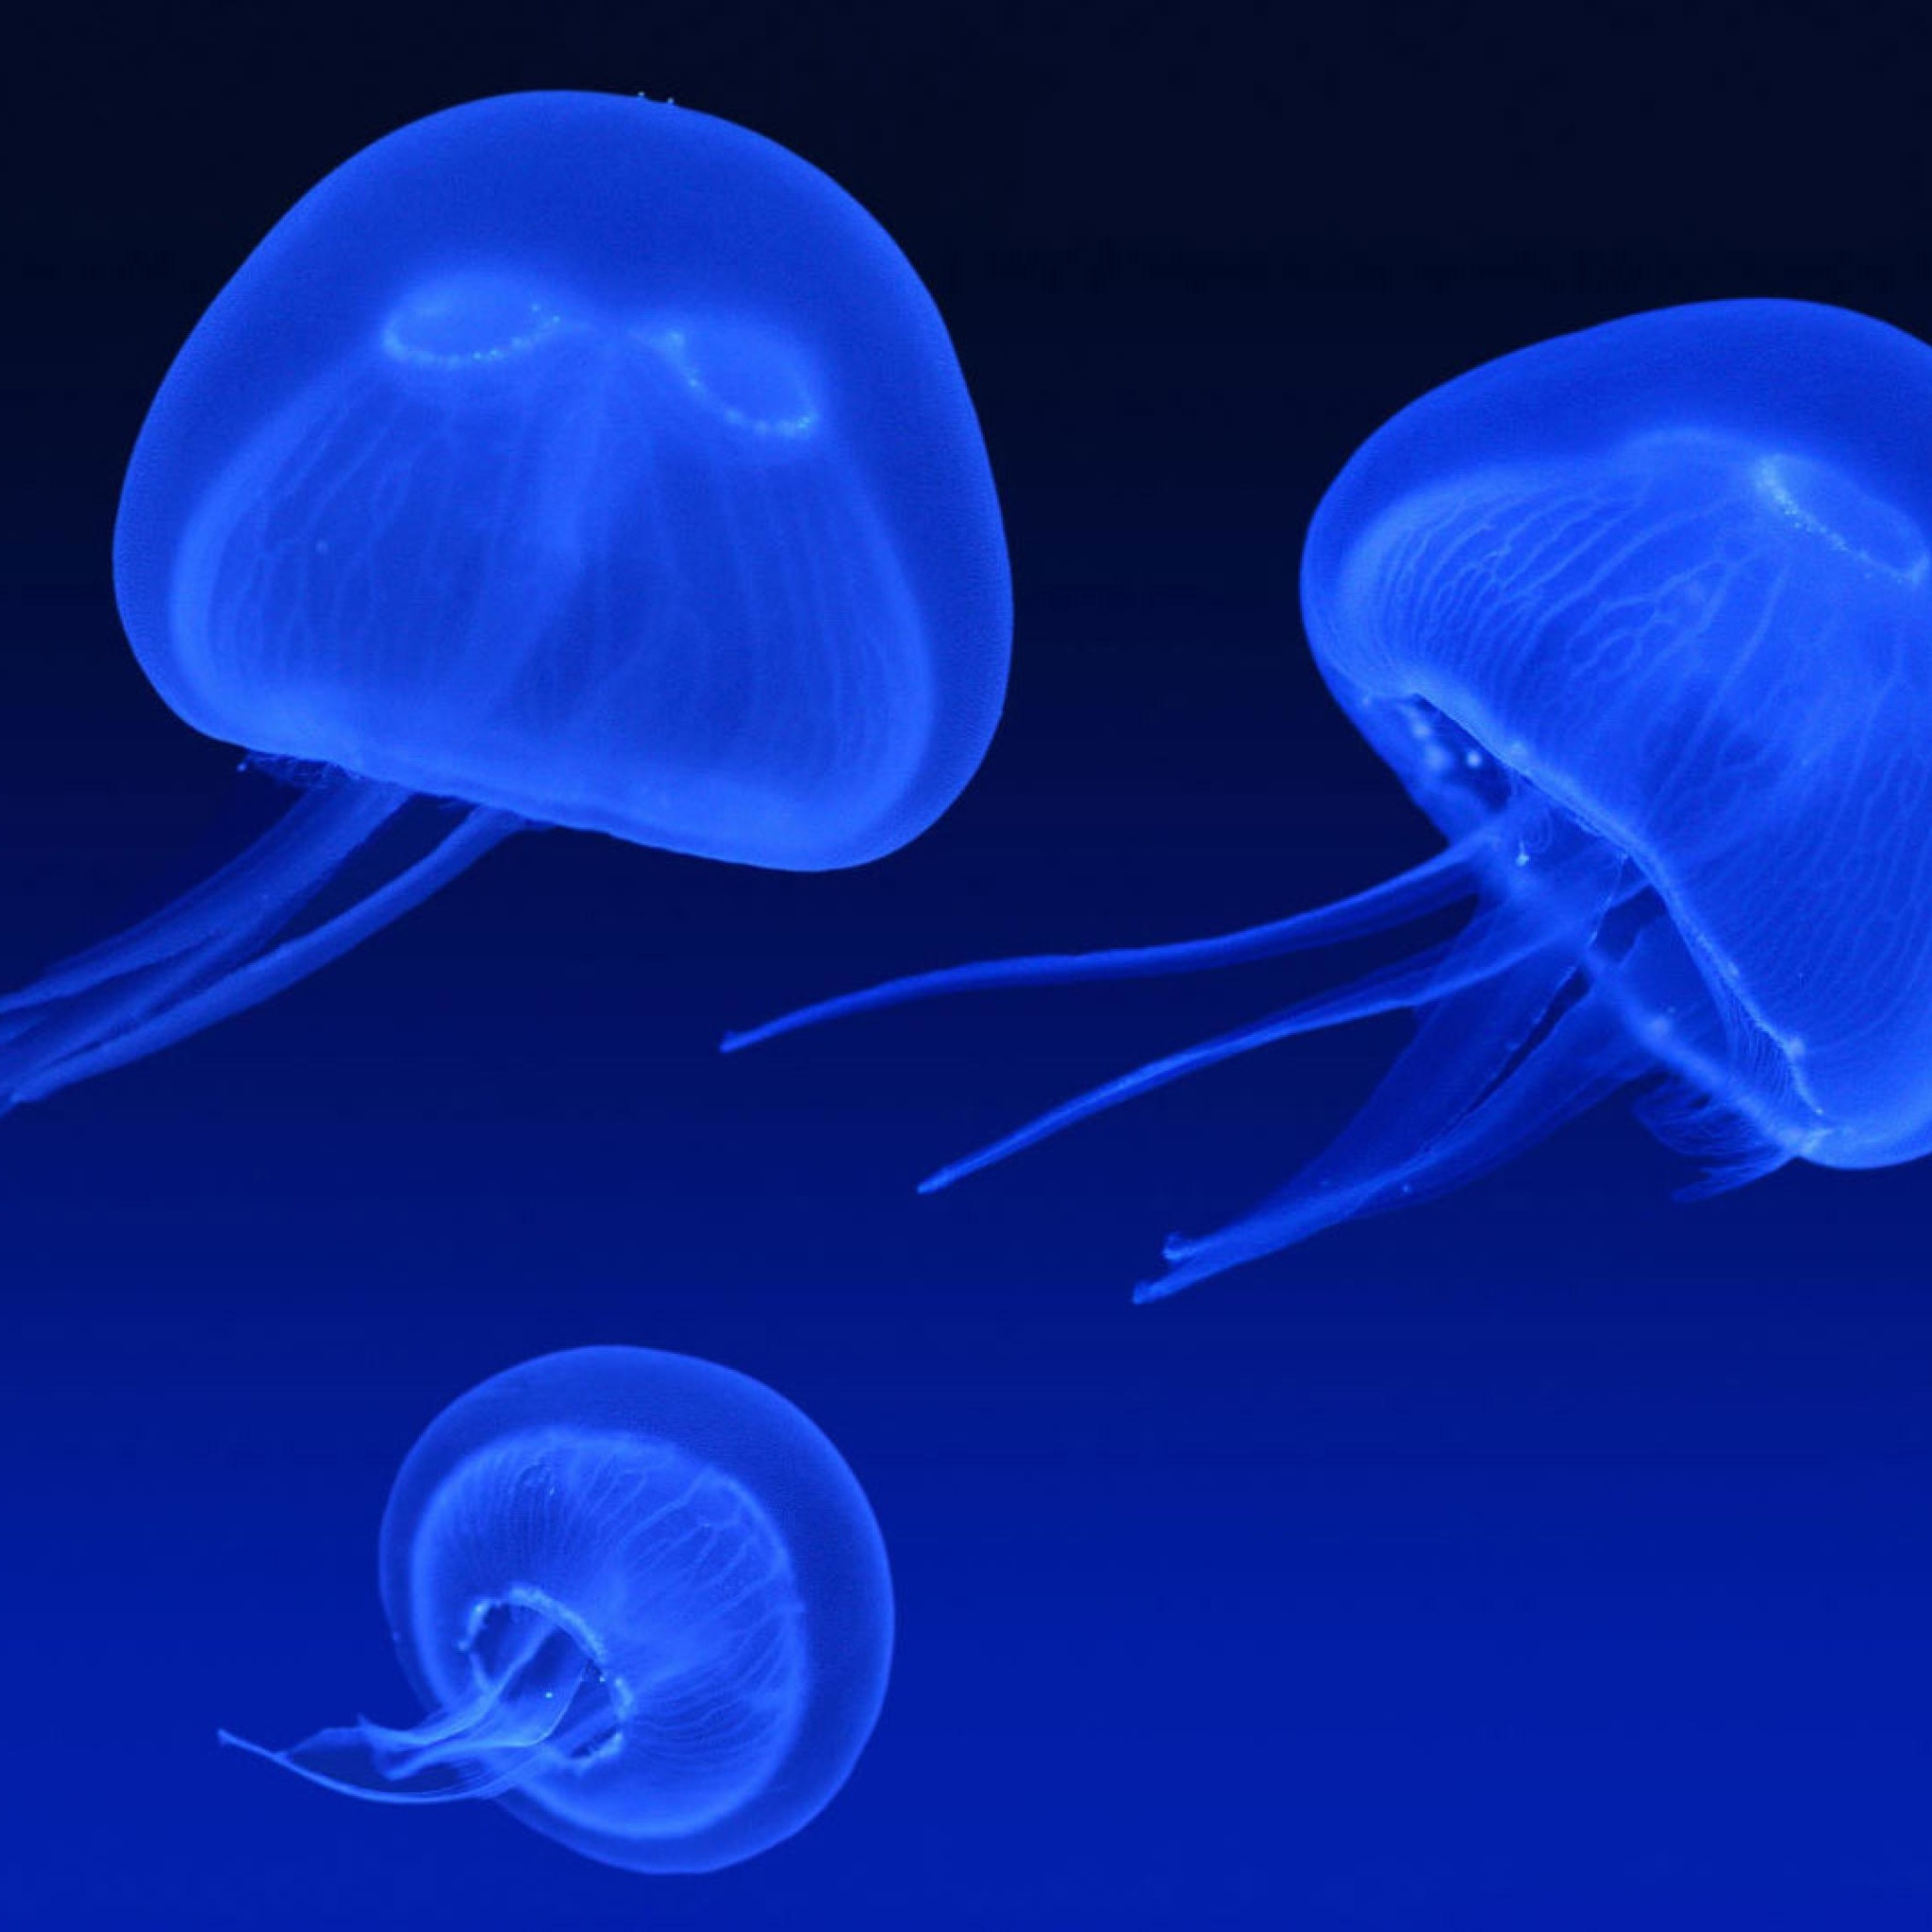 Neon box jellyfish screenshot #1 2048x2048